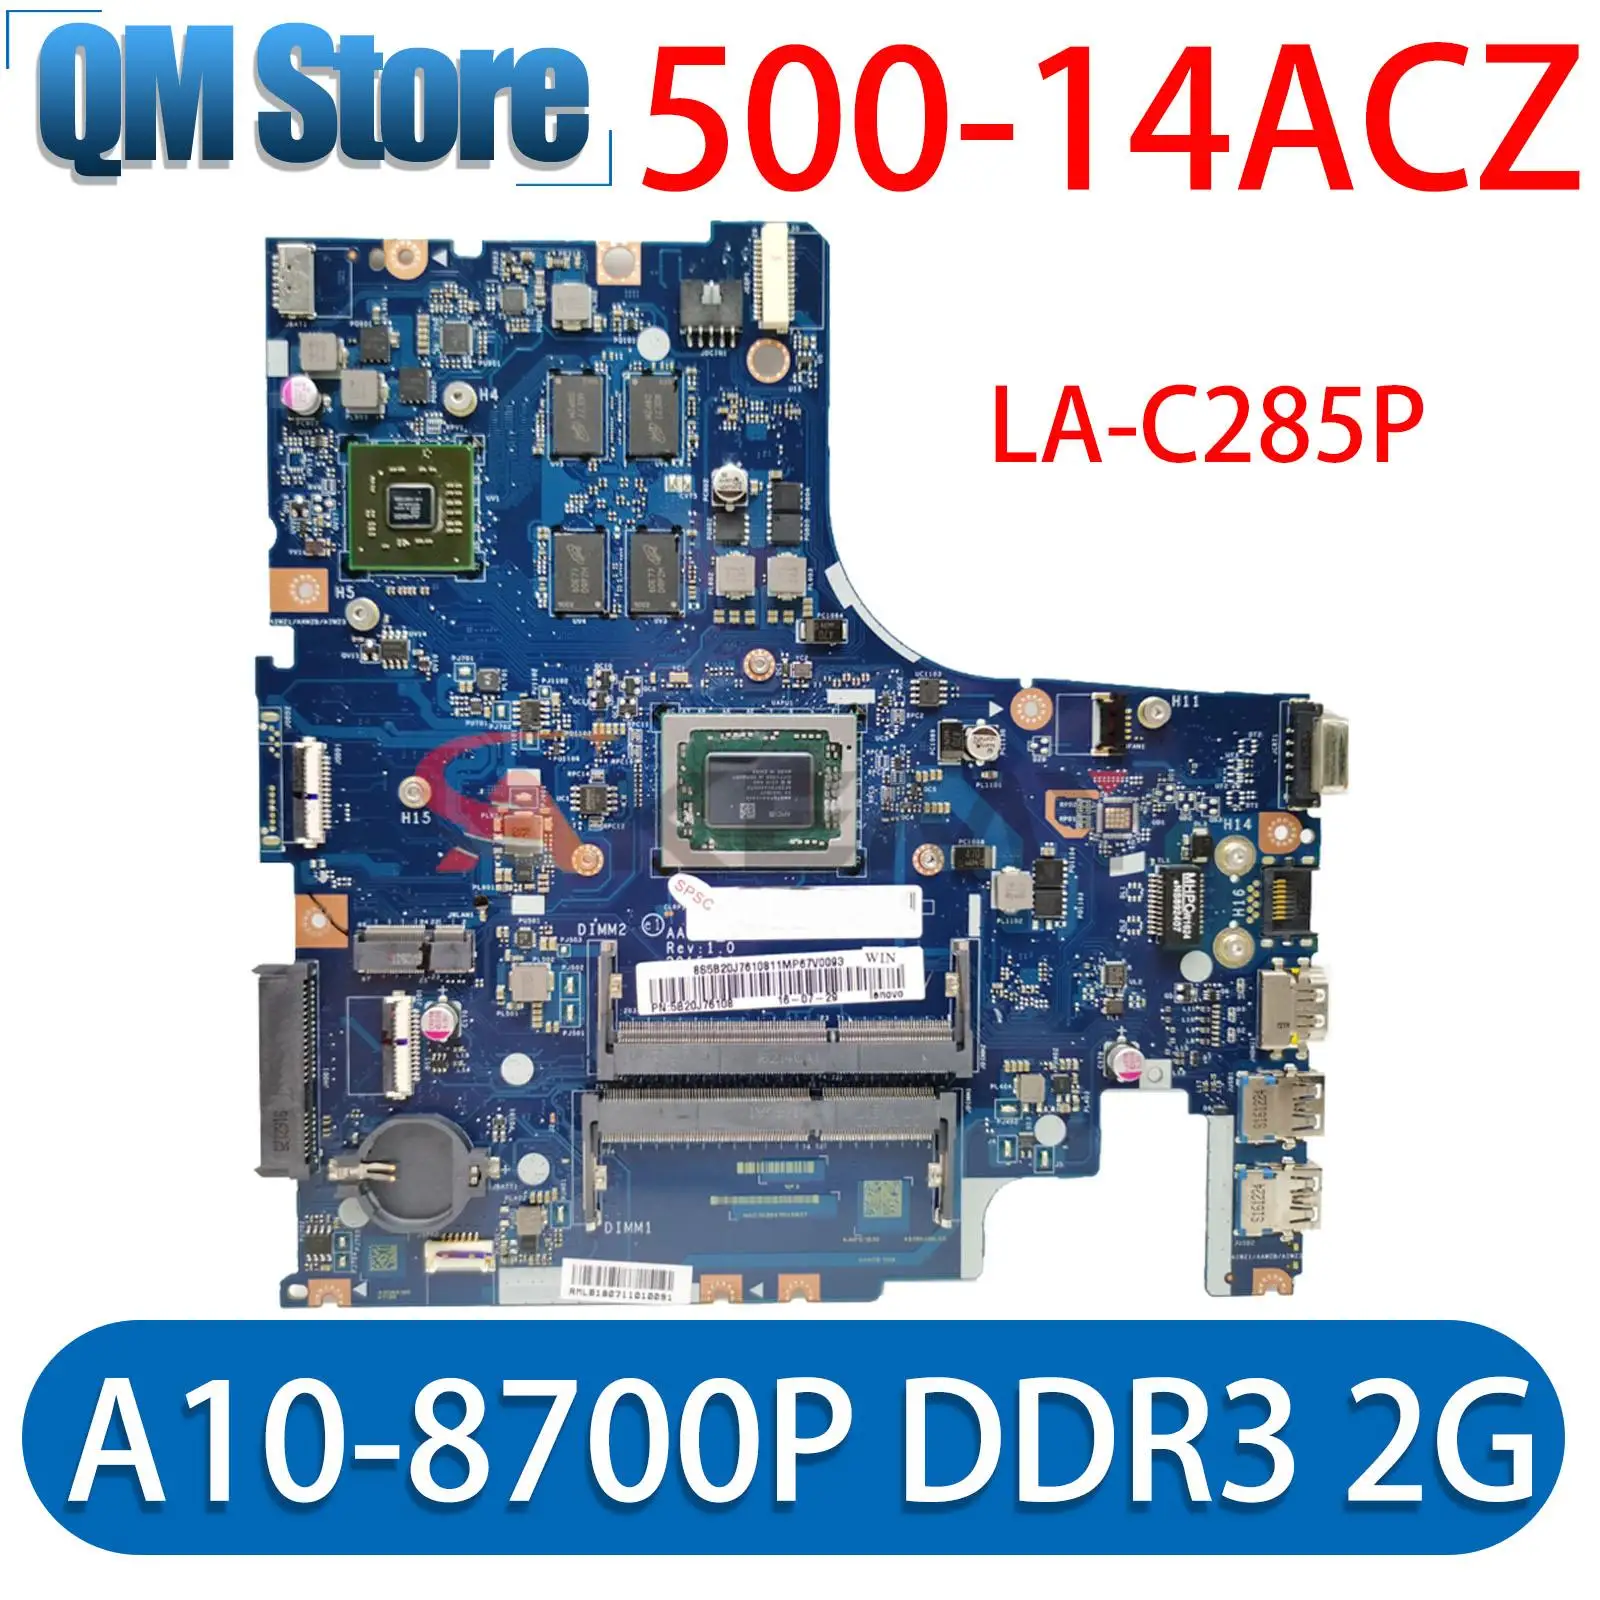 5B20J76050 5B20J76039 для Lenovo 500-14ACZ материнская плата ноутбука LA-C285P с графическим процессором A10-8700P DDR3 2G 100% протестирована